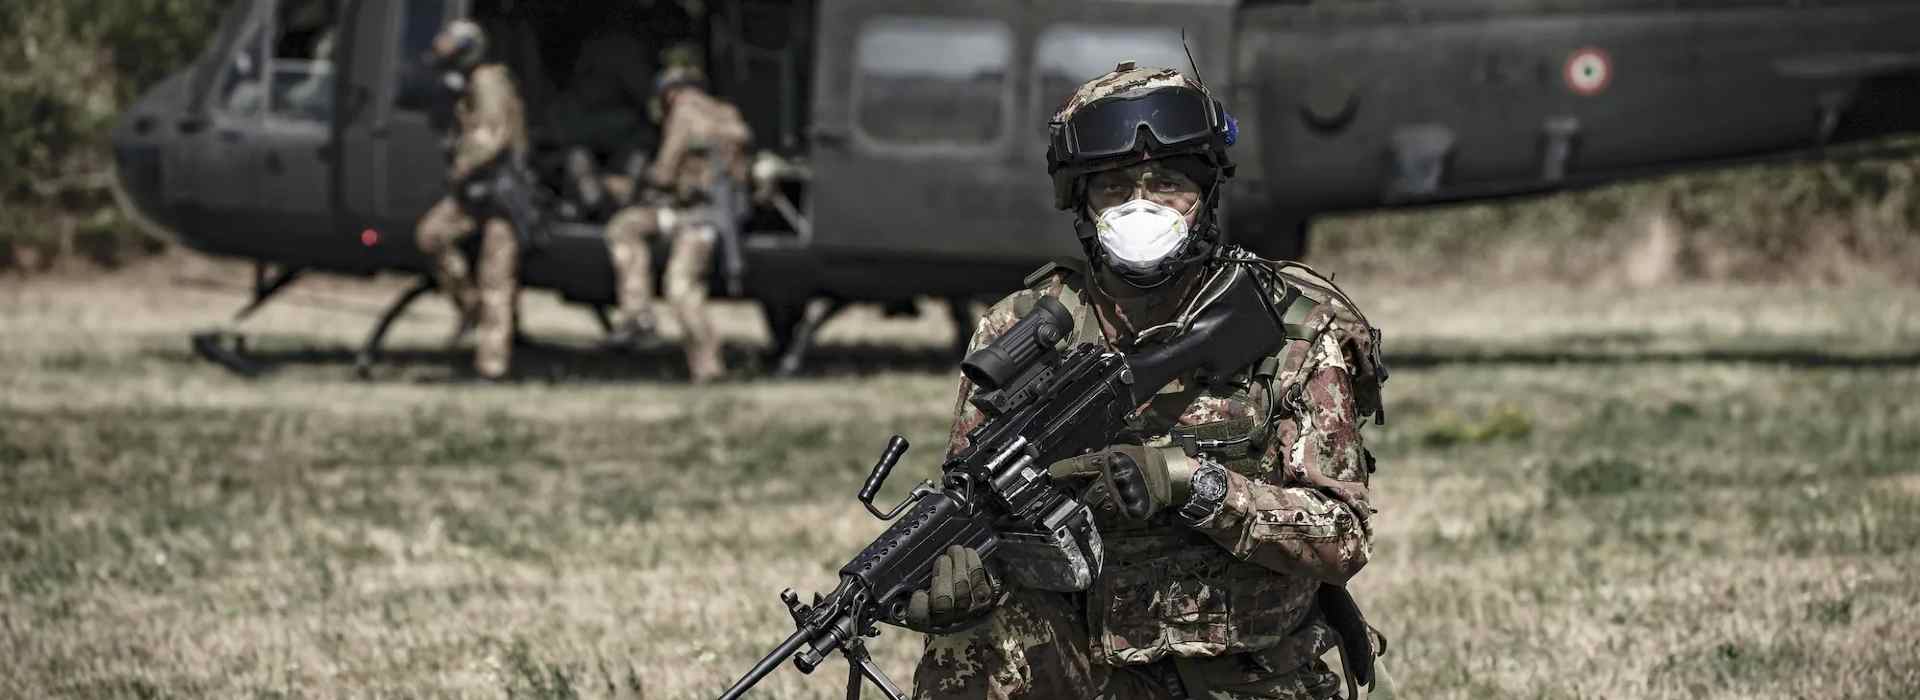 Russia-Ucraina: l'Esercito italiano si prepara "mantenendo i massimi livelli di efficienza"